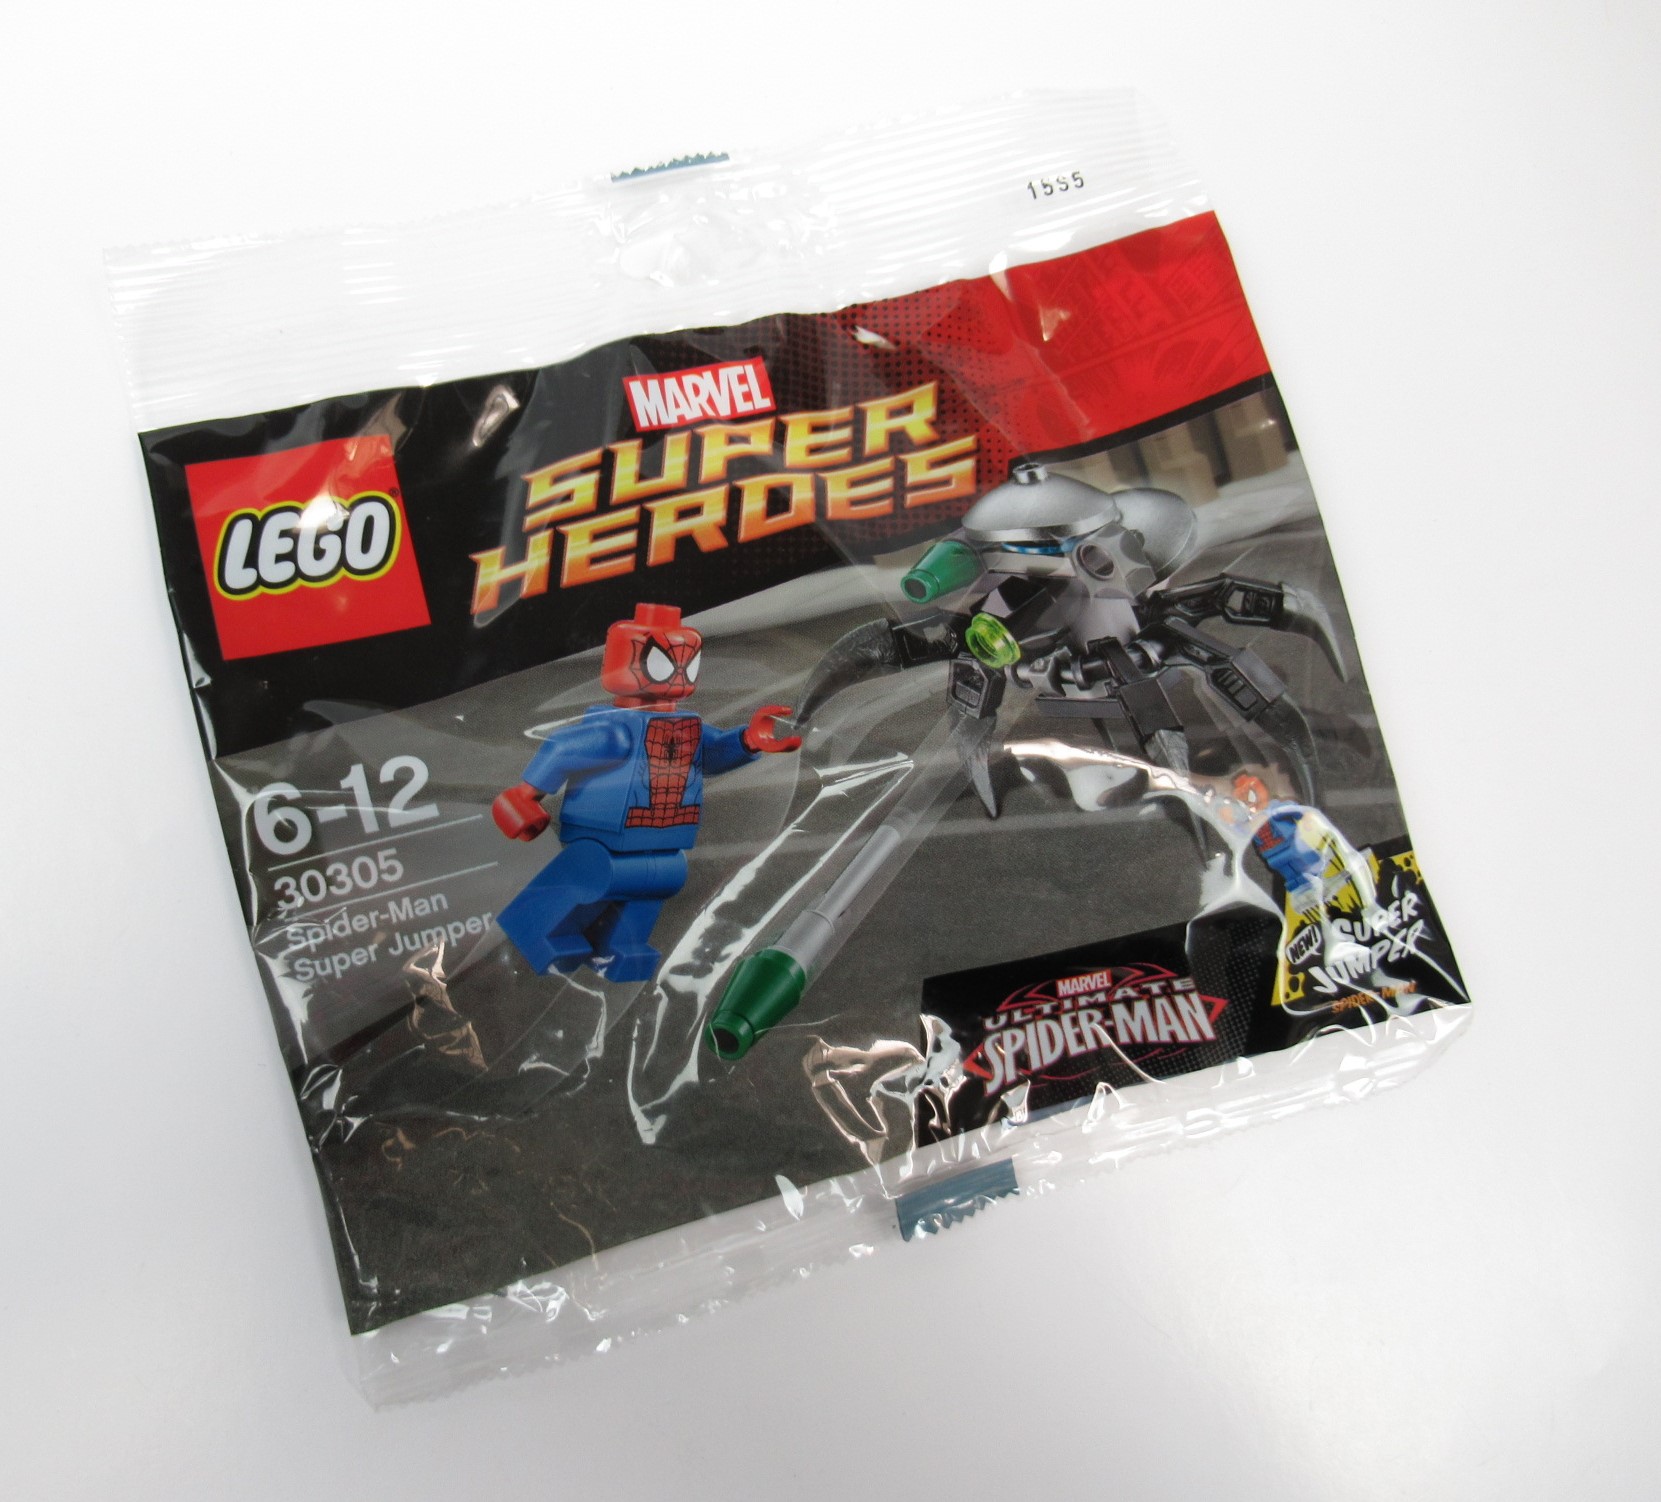 Immagine relativa a LEGO Super Heroes 30305 Spider-Man Super Jumper Polybag